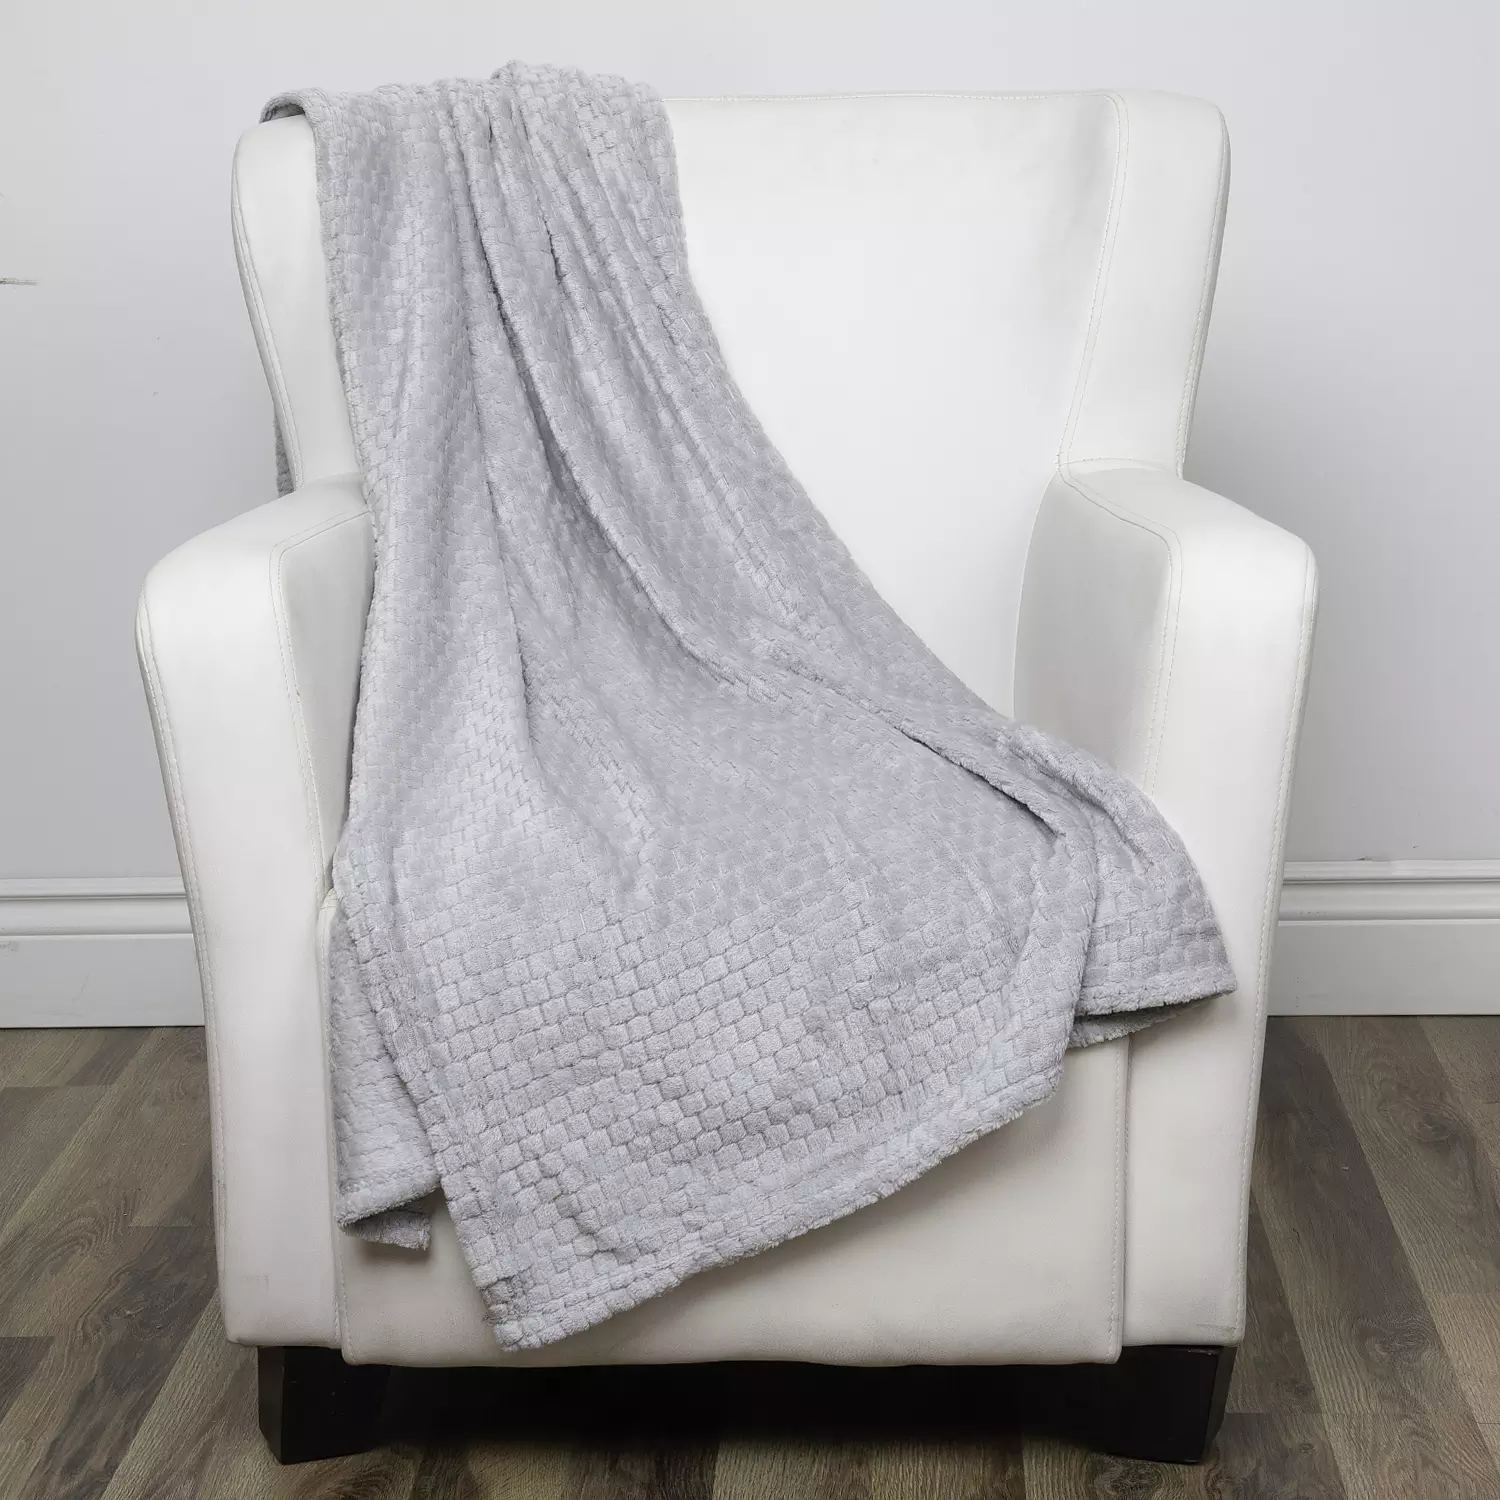 Super soft textured flannel throw, 50"x60", grey